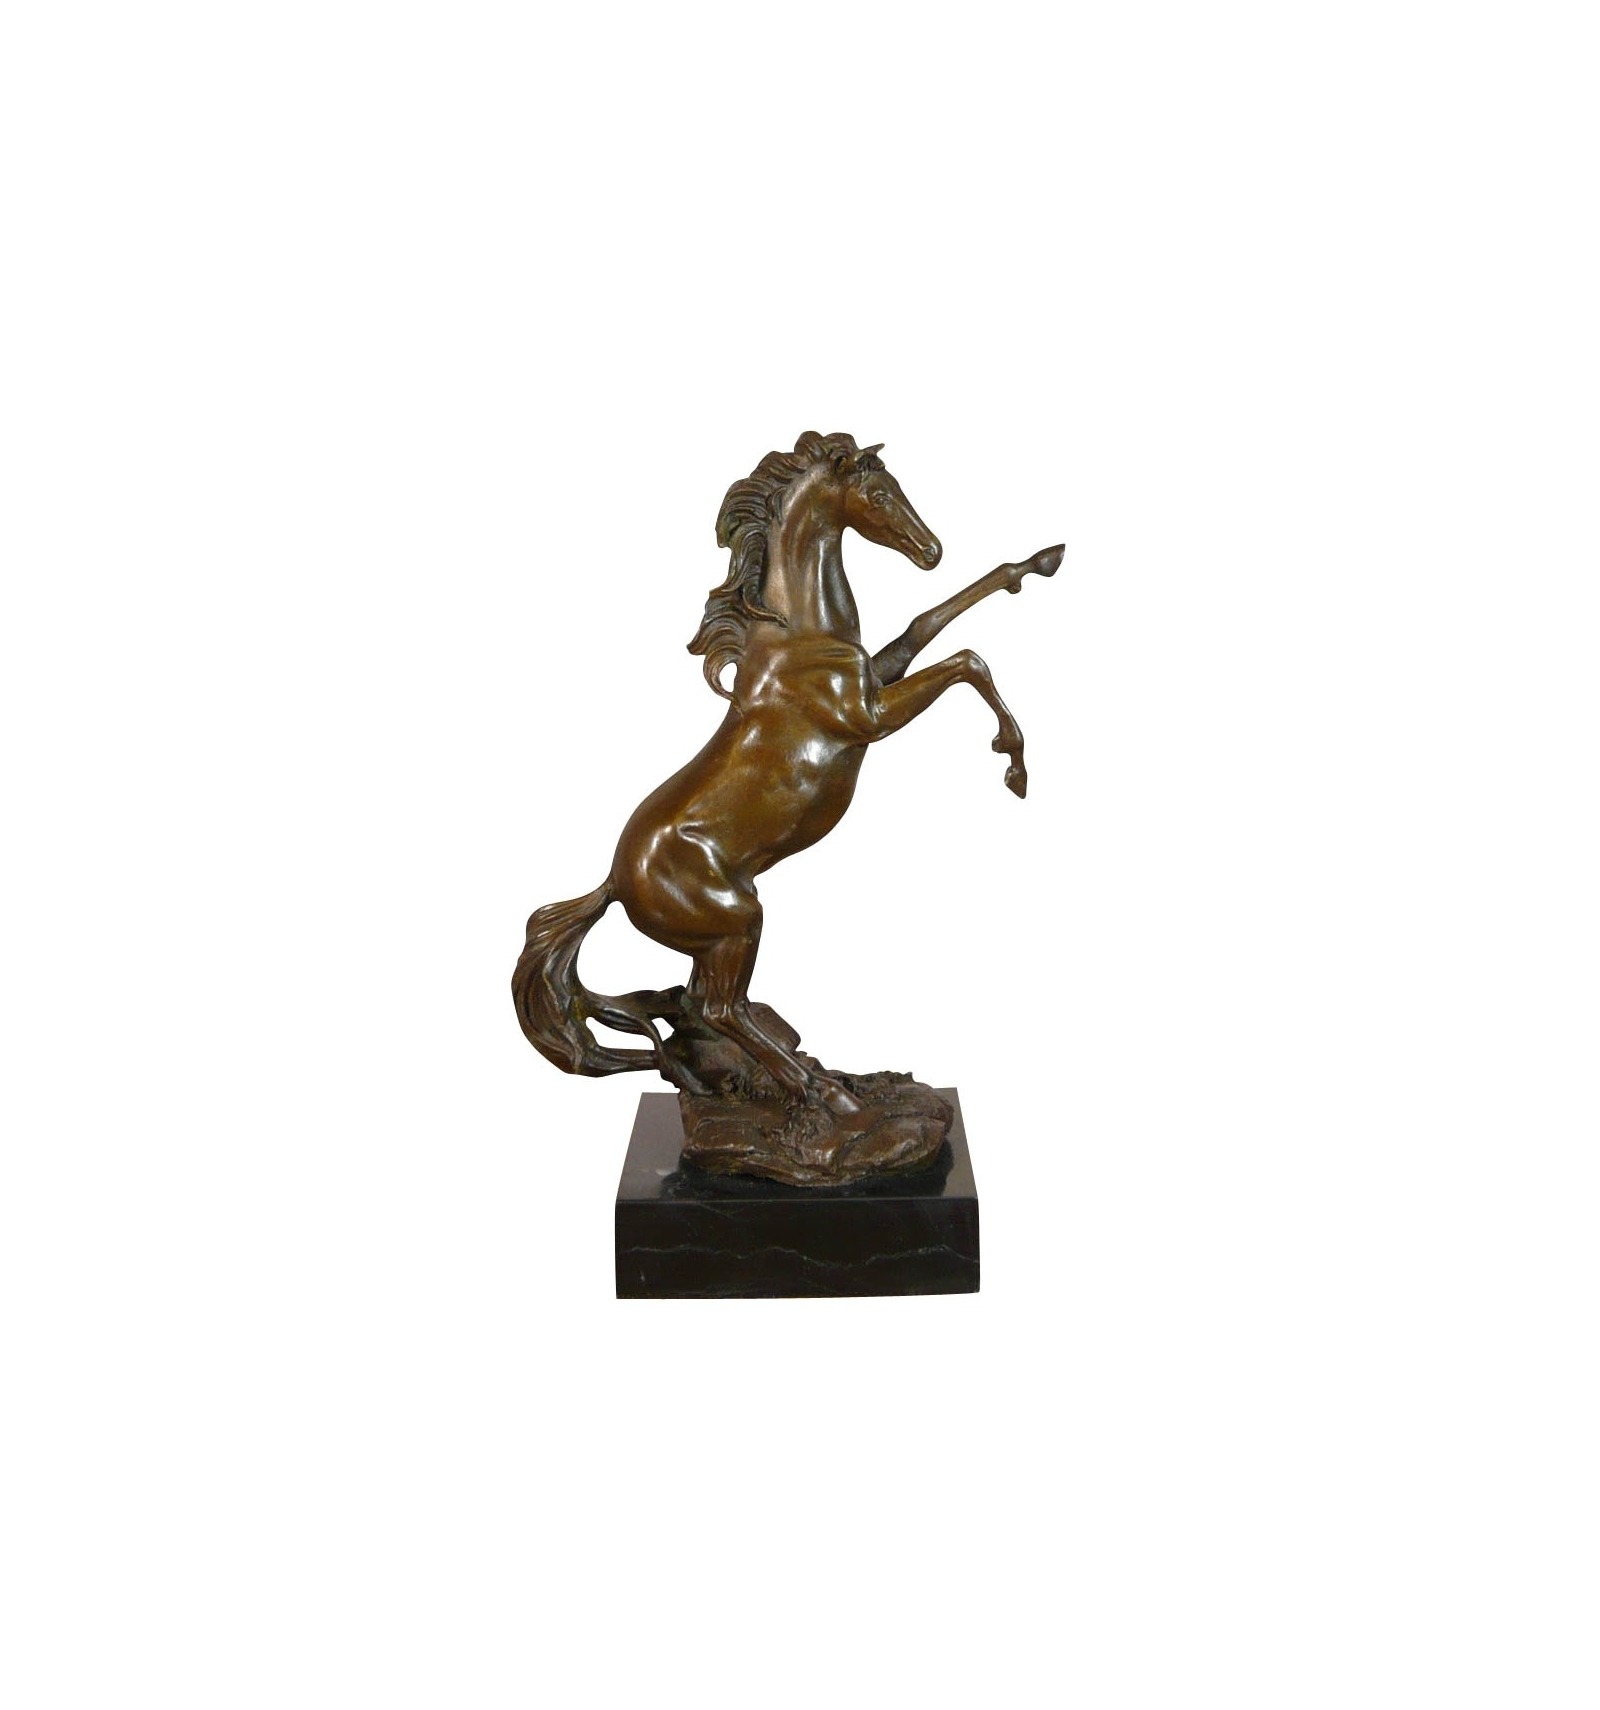 koolhydraat Toezicht houden vasteland Bronzen standbeeld van een opgezette paard-bronzen paard-bronzen sculptuur